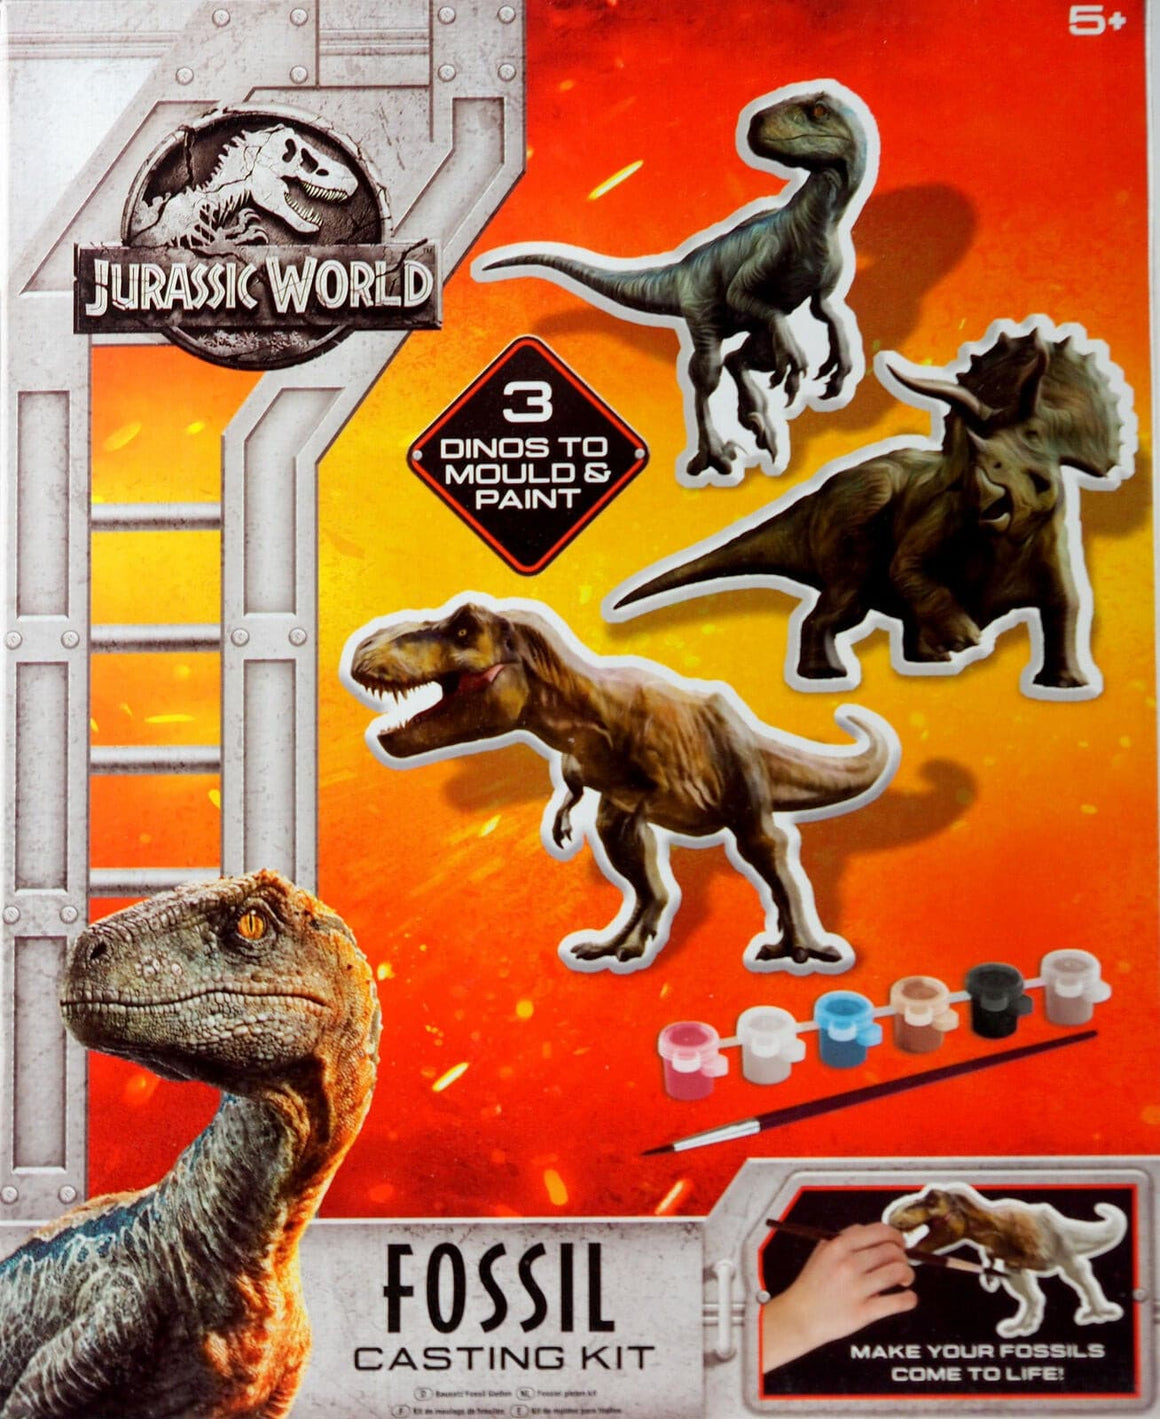 Jurassic World Dinosaur Fossil Casting Kit.